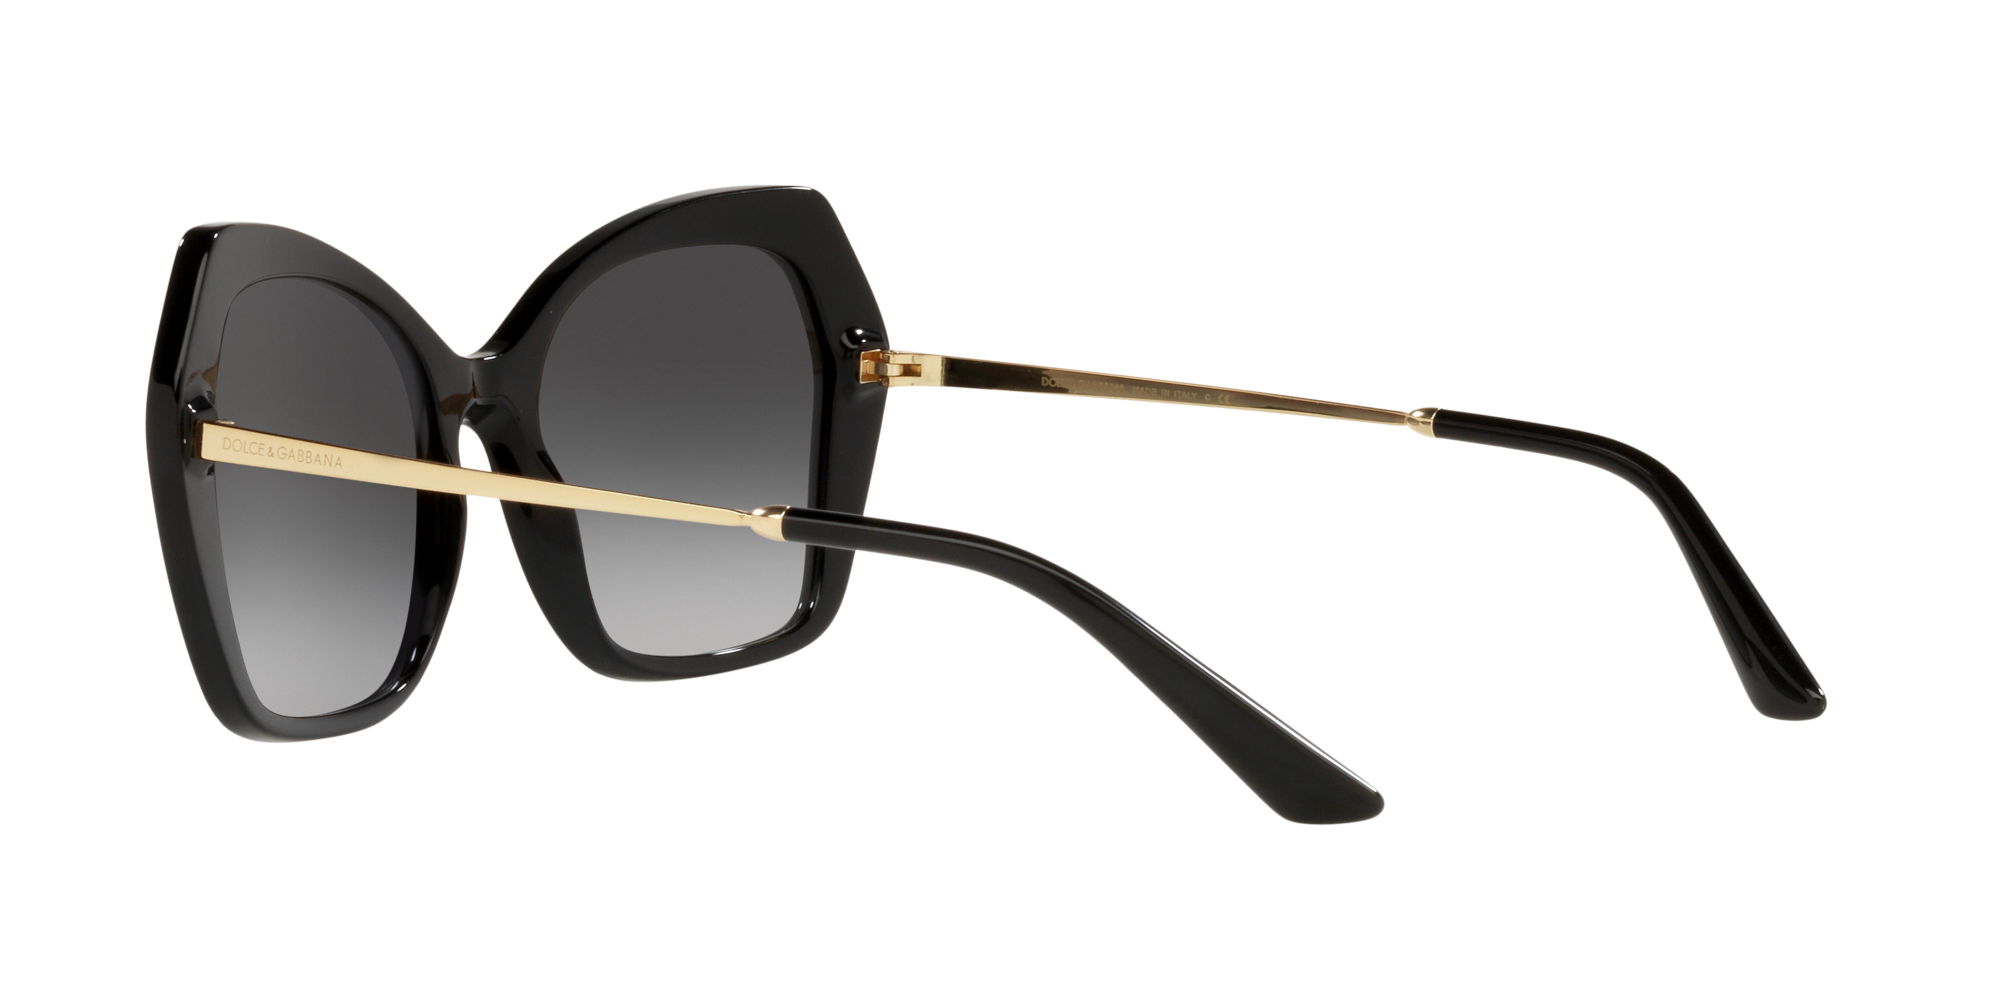 Dolce & Gabbana Sonnenbrille in Schwarz DG4399 501/8G 56